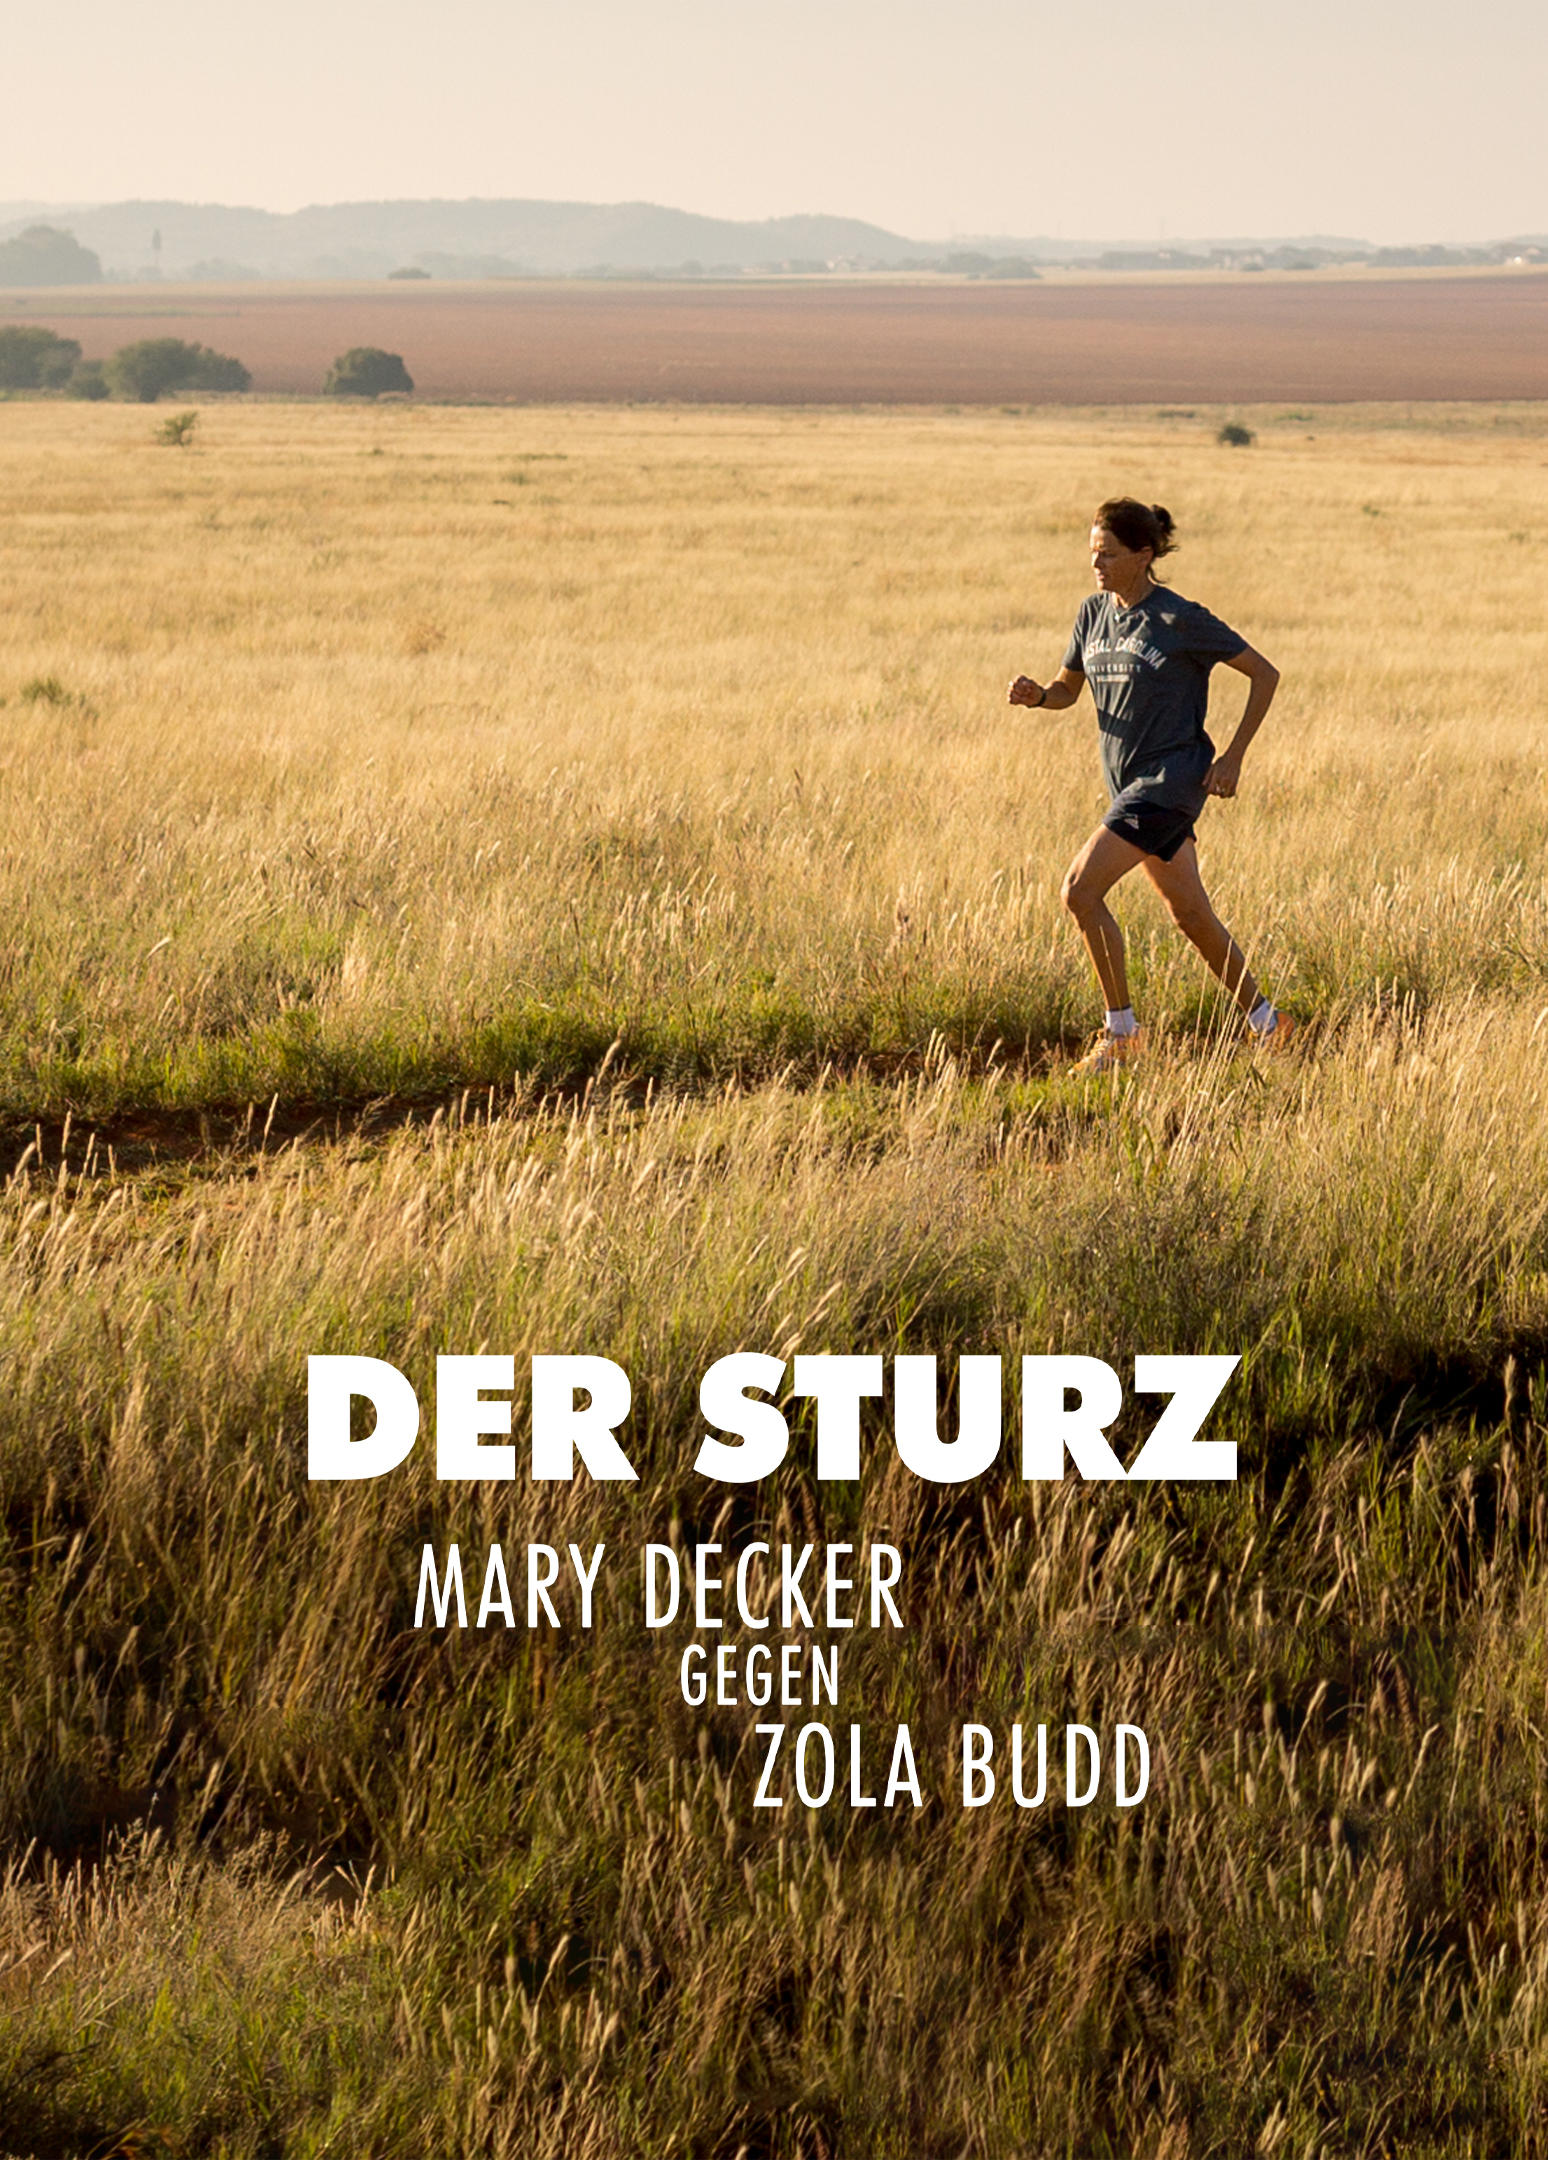 Der Sturz - Mary Decker gegen Zola Budd